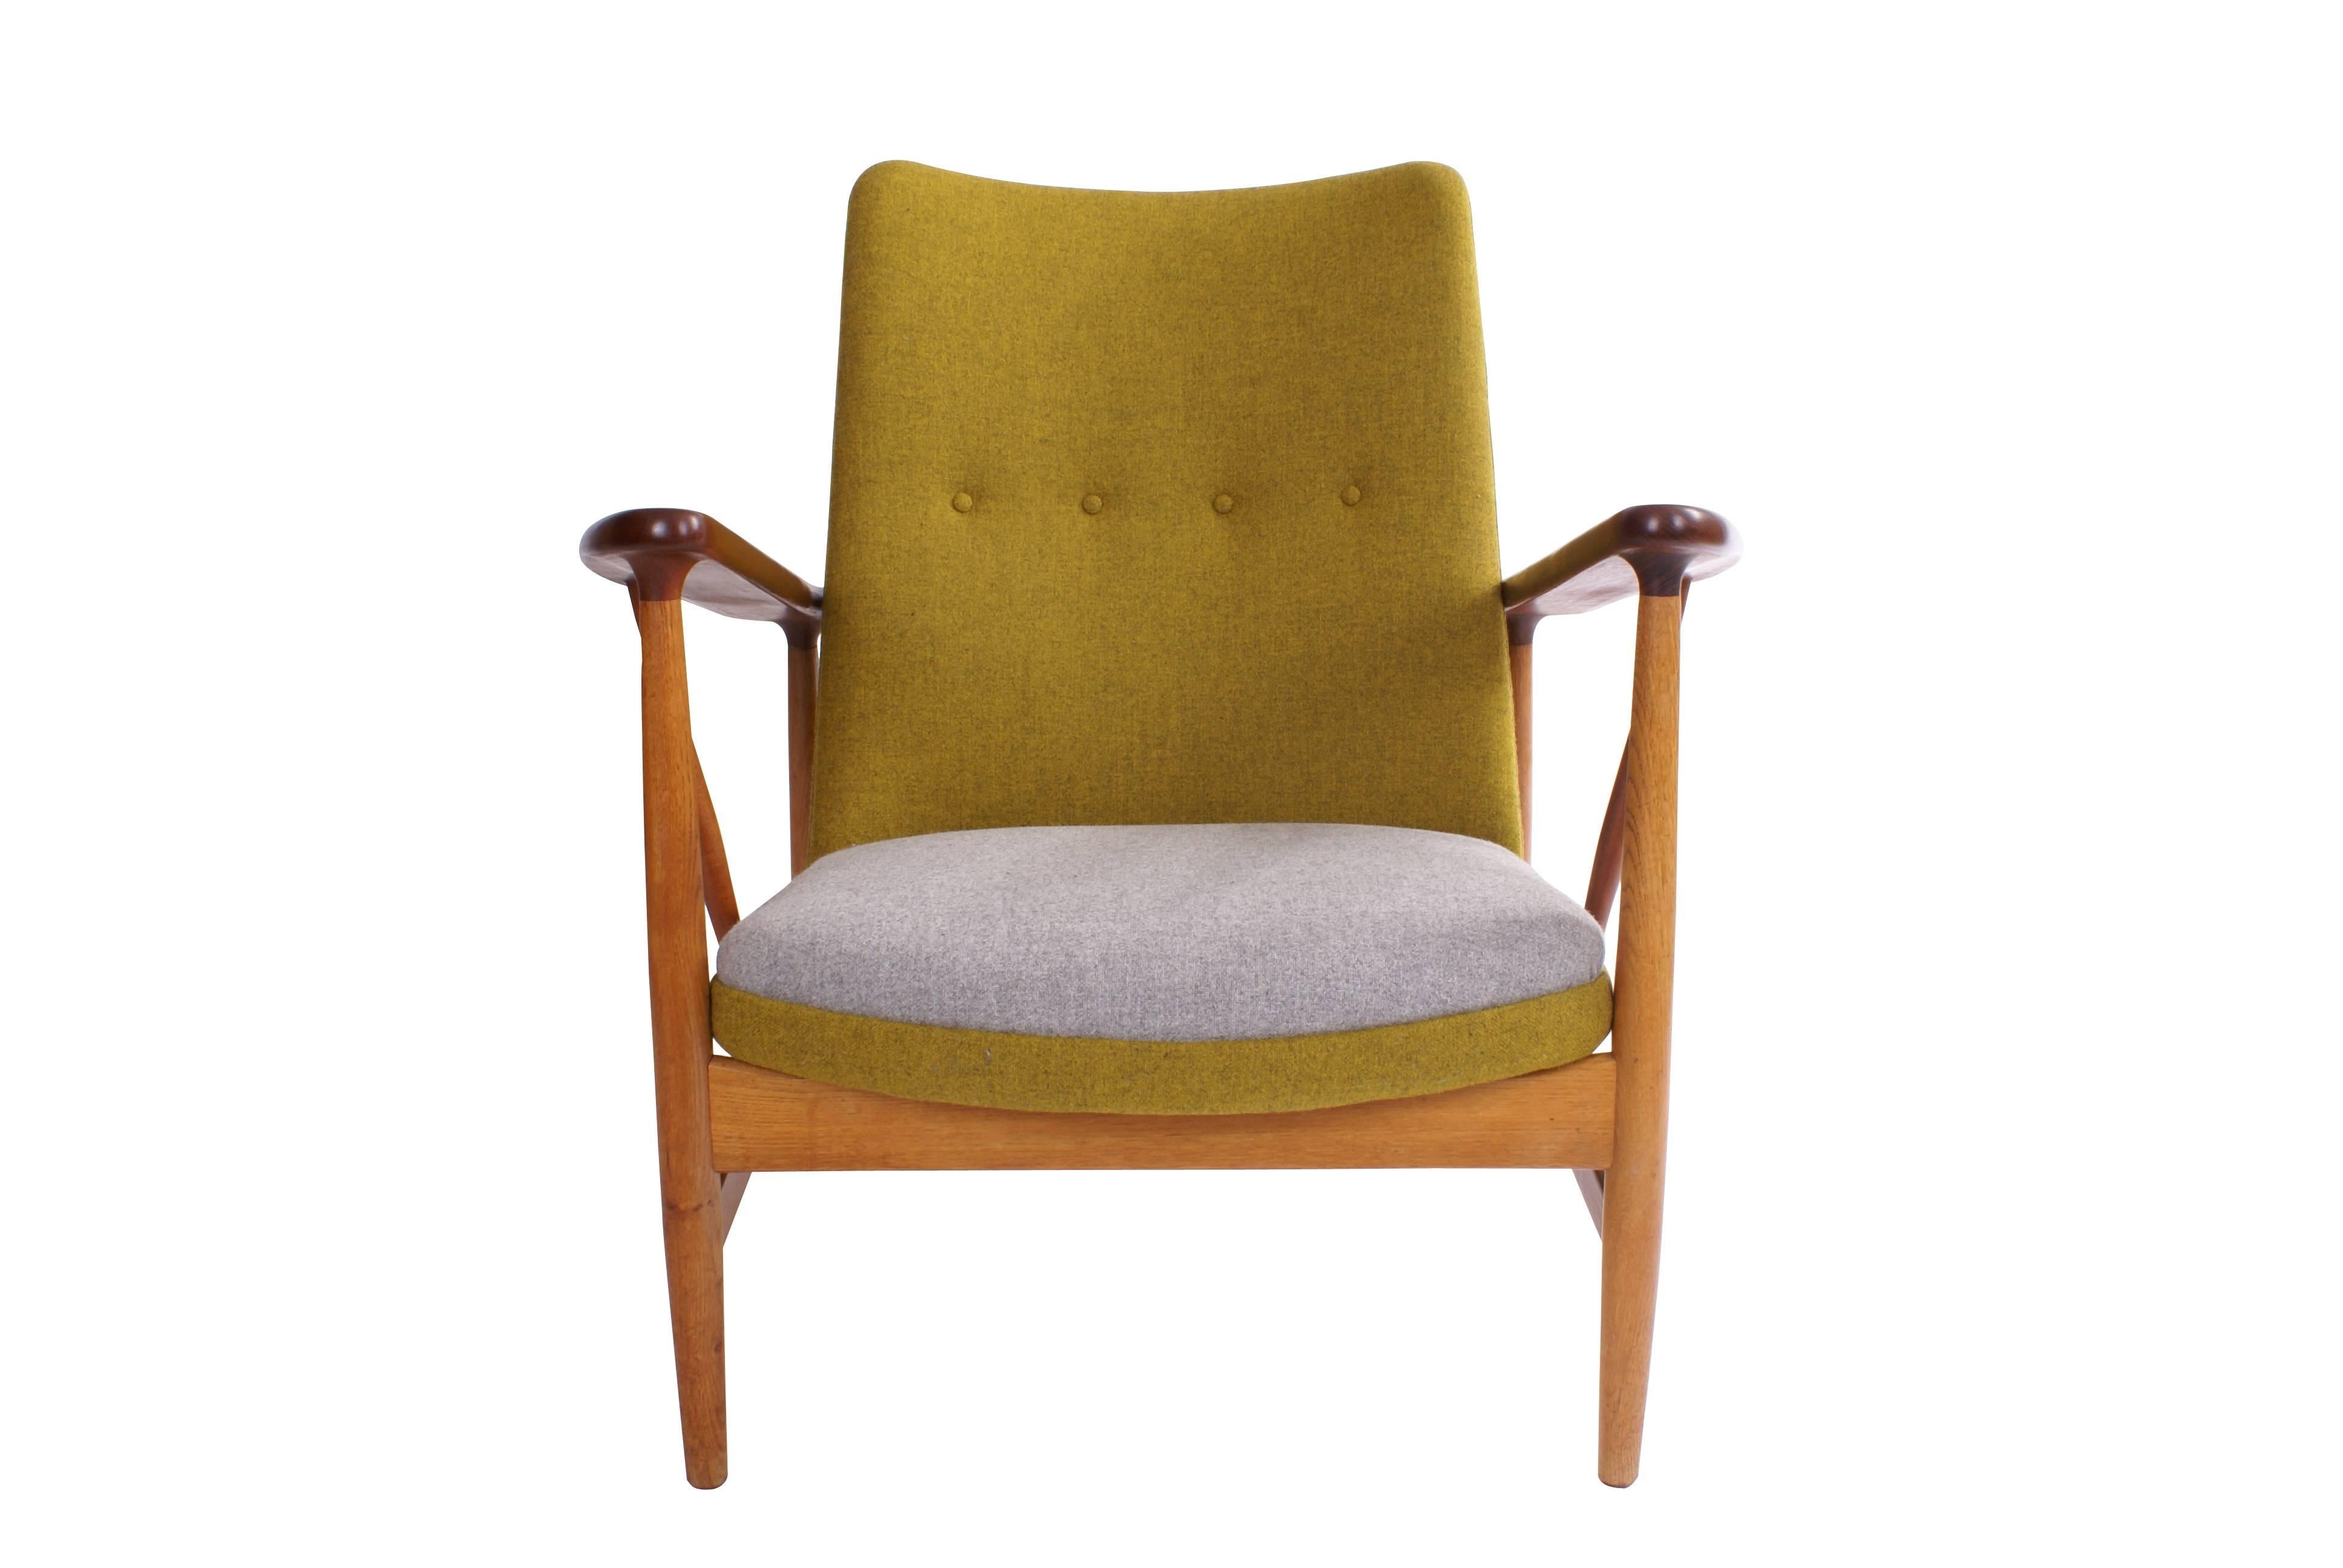 Finn Juhl lounge chair. Model SW86 for cabinetmaker Søren Willadsen. Made of oak and armrests in teak. Upholstered in Kvadrat fabric with nails. Designed, 1952.

Literature: Bygge & Bo, no. 1, 1952, p. 34. Dansk Kunsthåndværk, februar 1953, p.